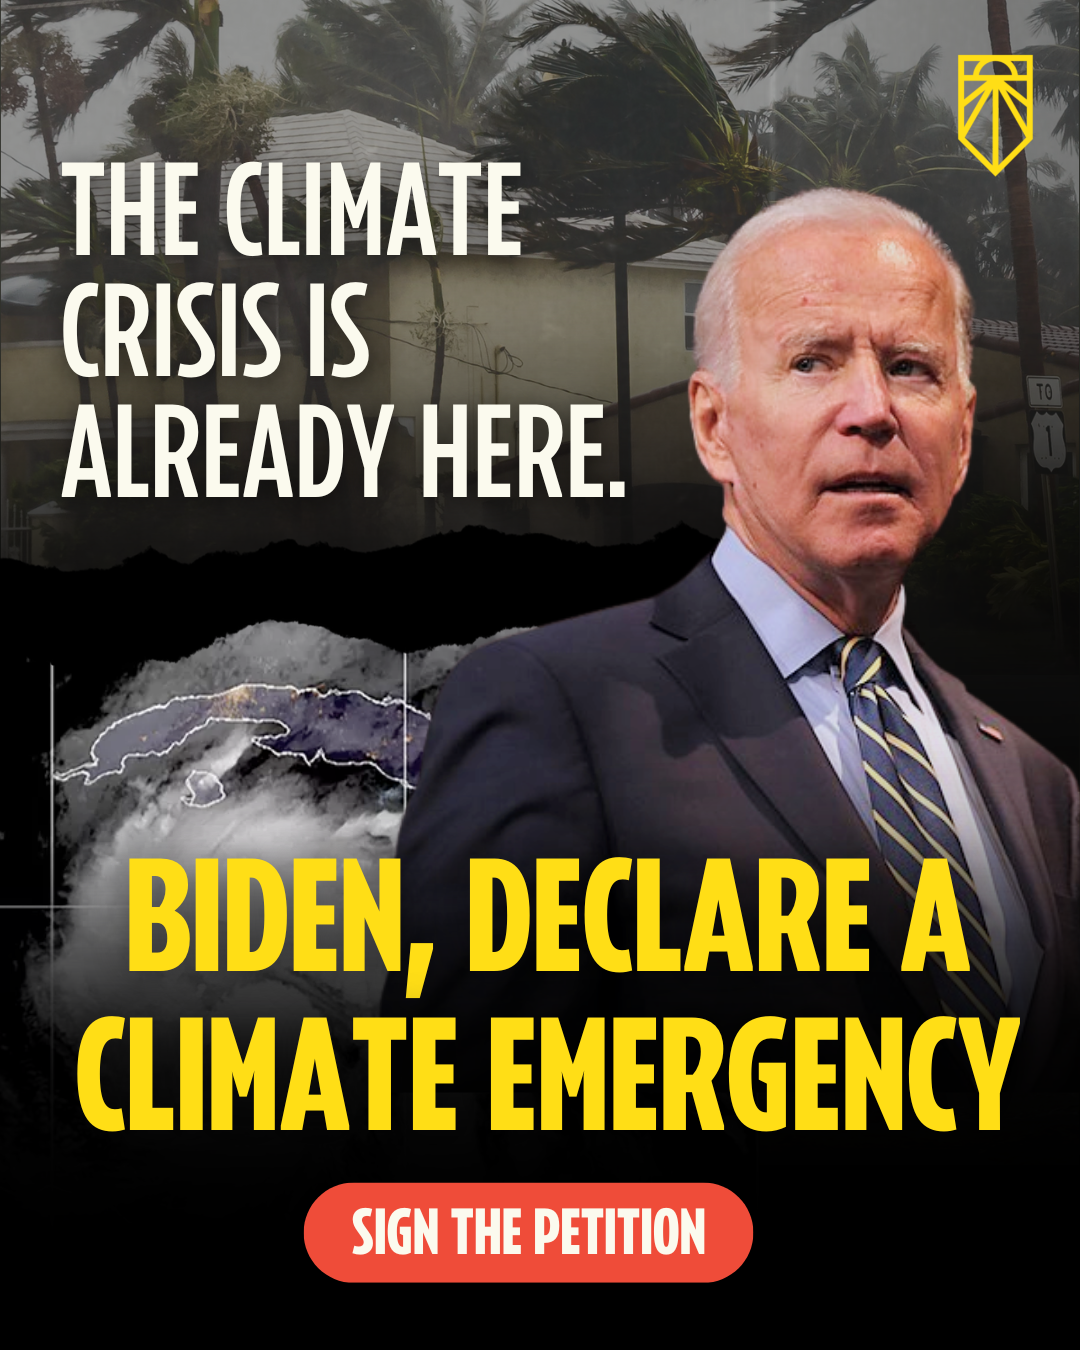 A crise climática já está aqui. Biden, Declare uma Emergência Climática. Assine a petição.